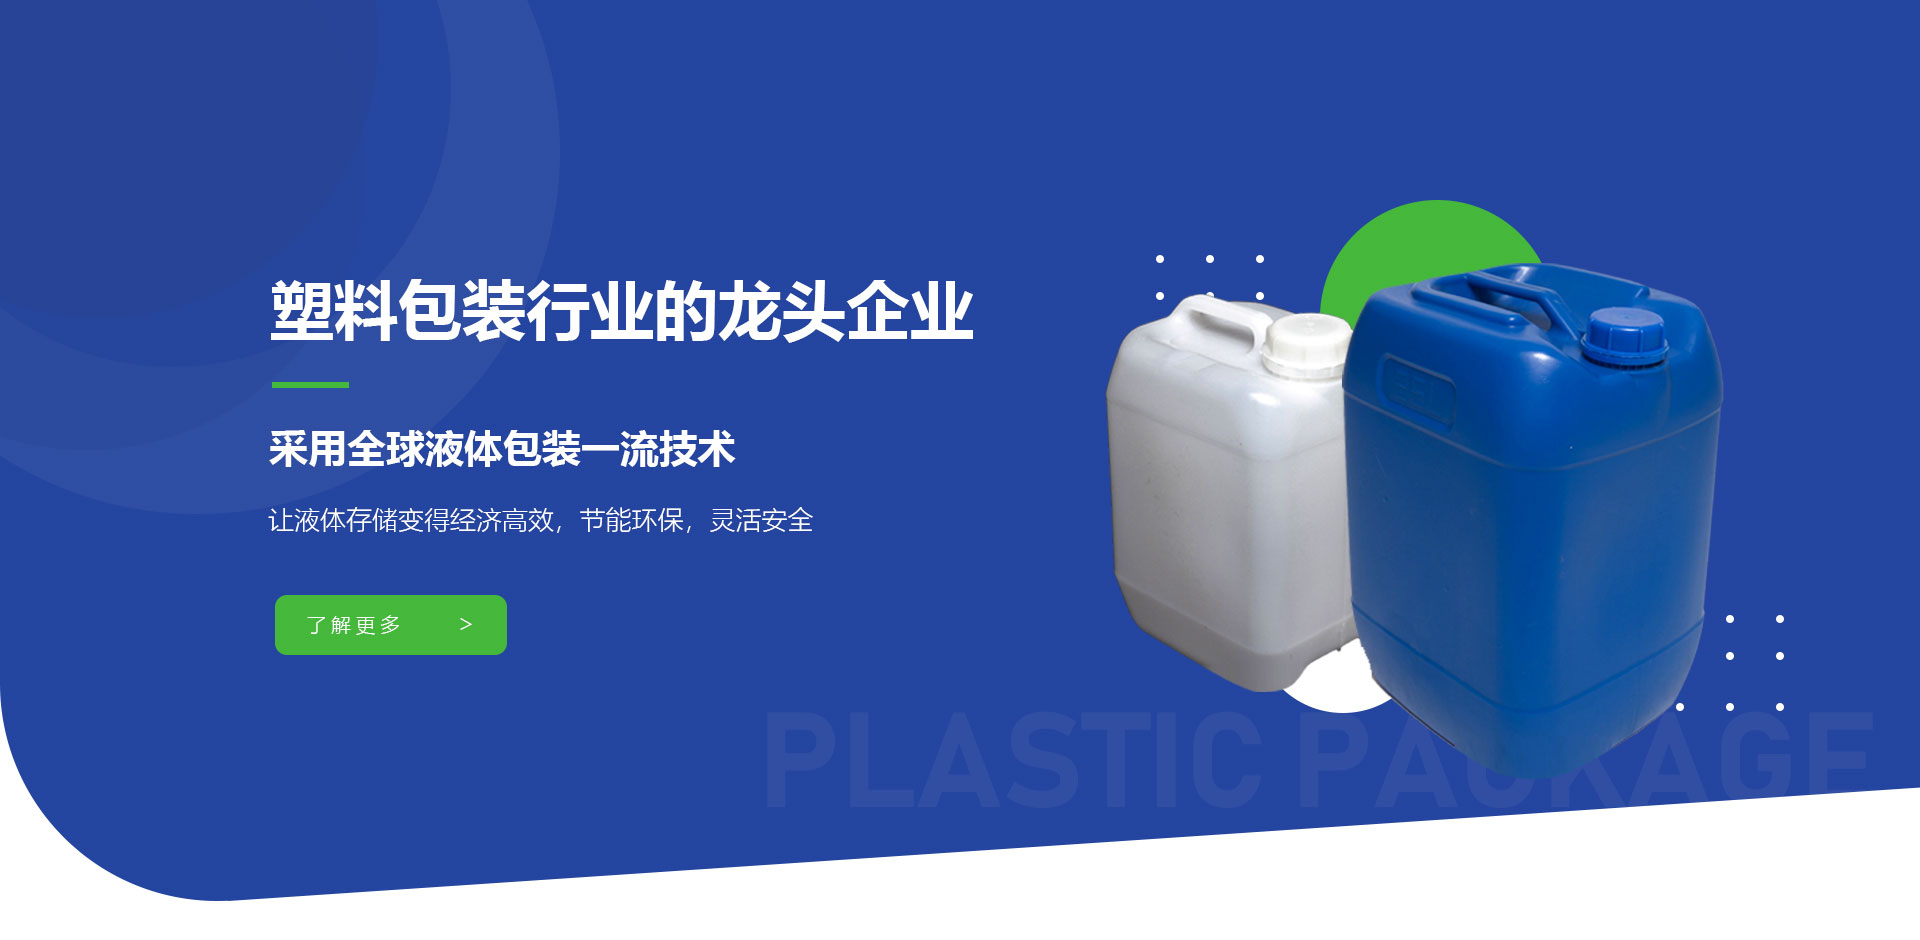 塑料包裝行業龍頭企業